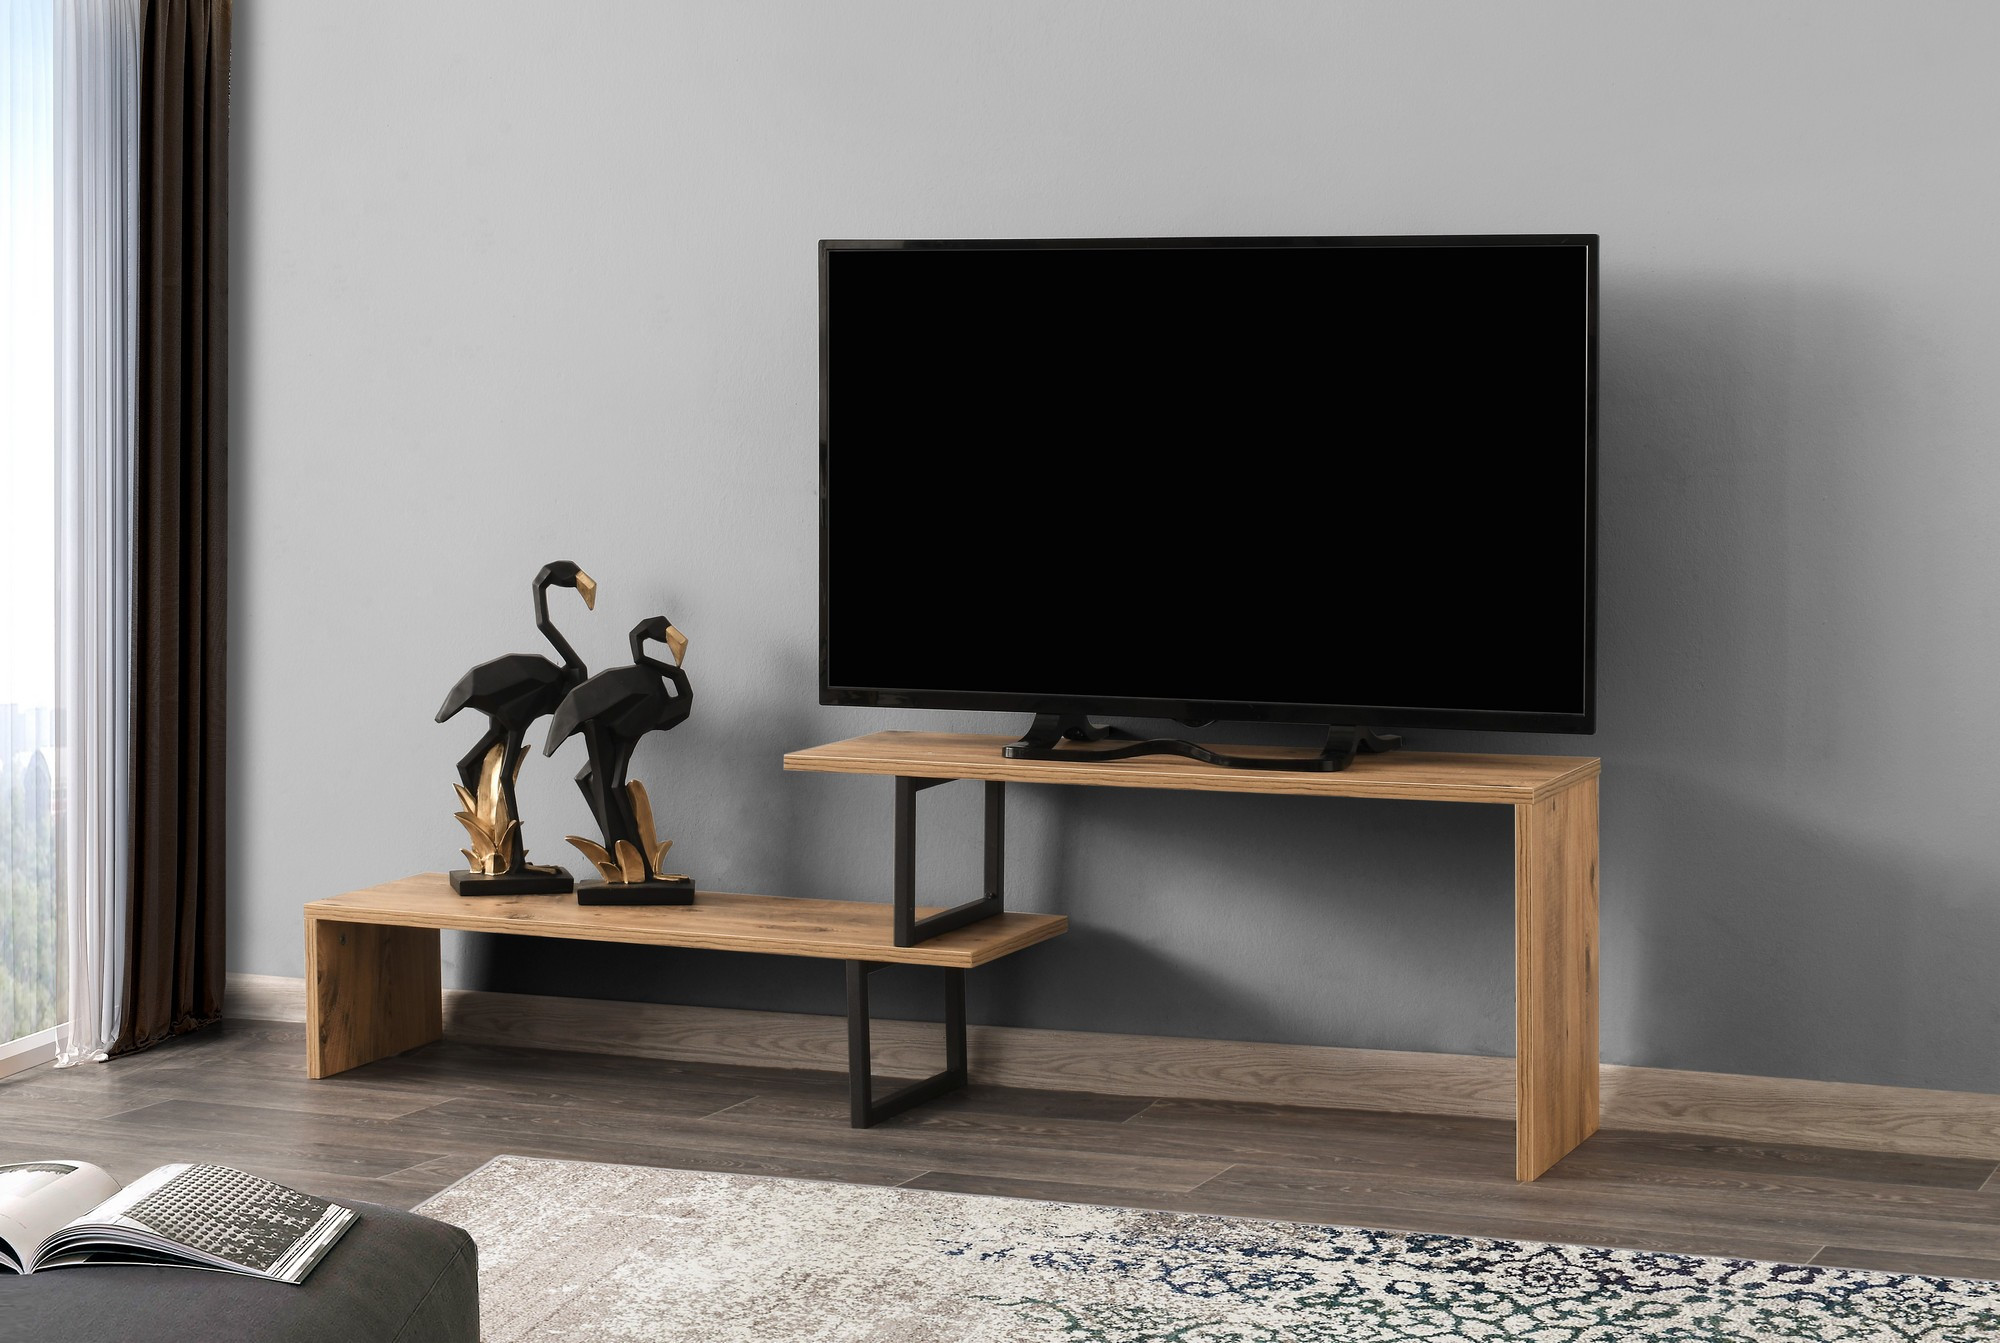 Televizní stolek OVIT černá borovice